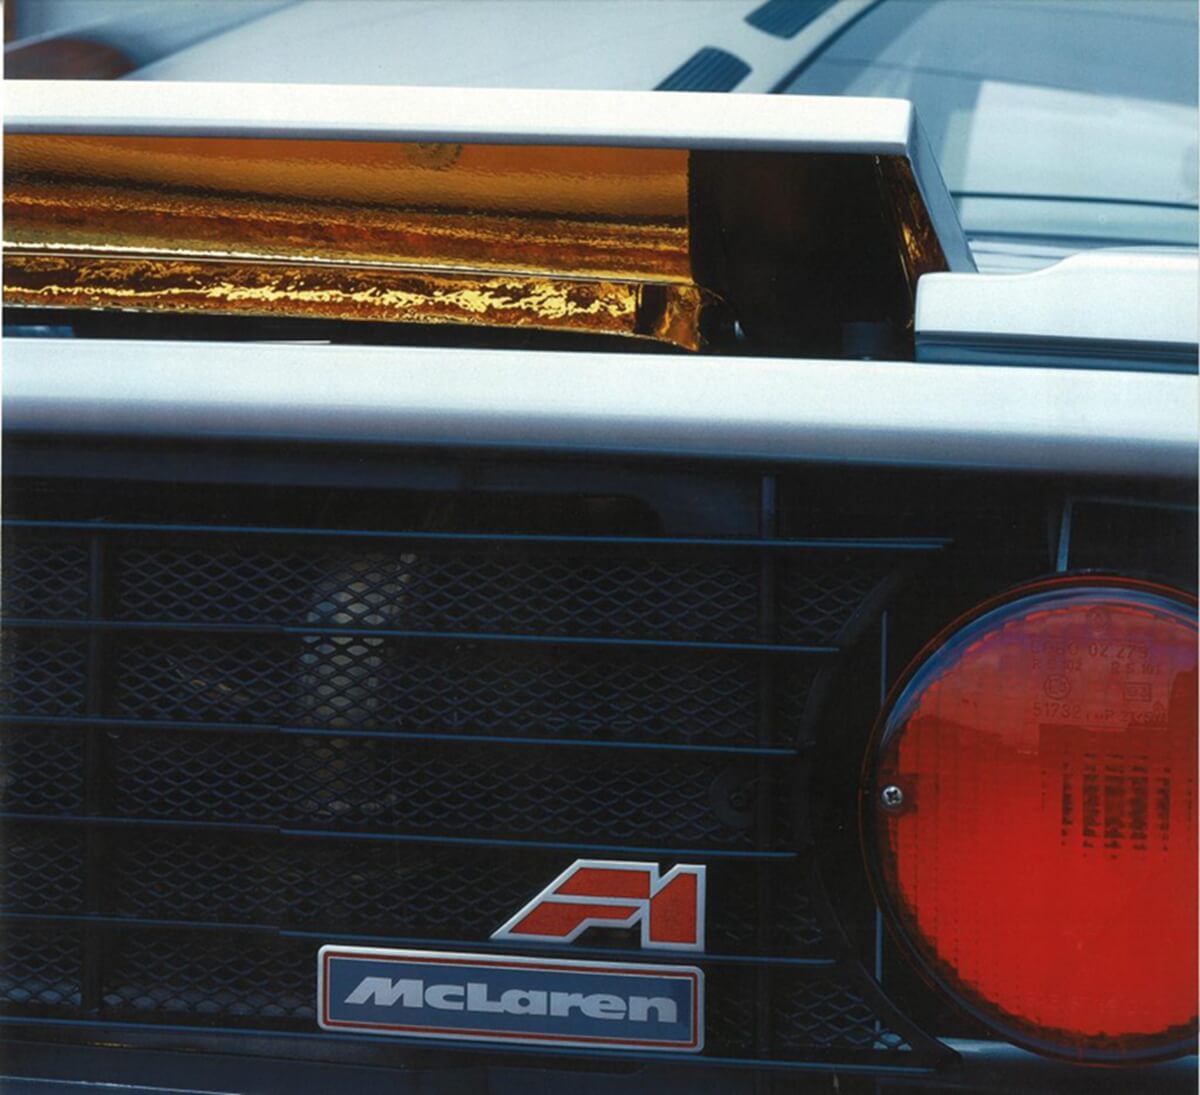 McLarenf1rear.jpg